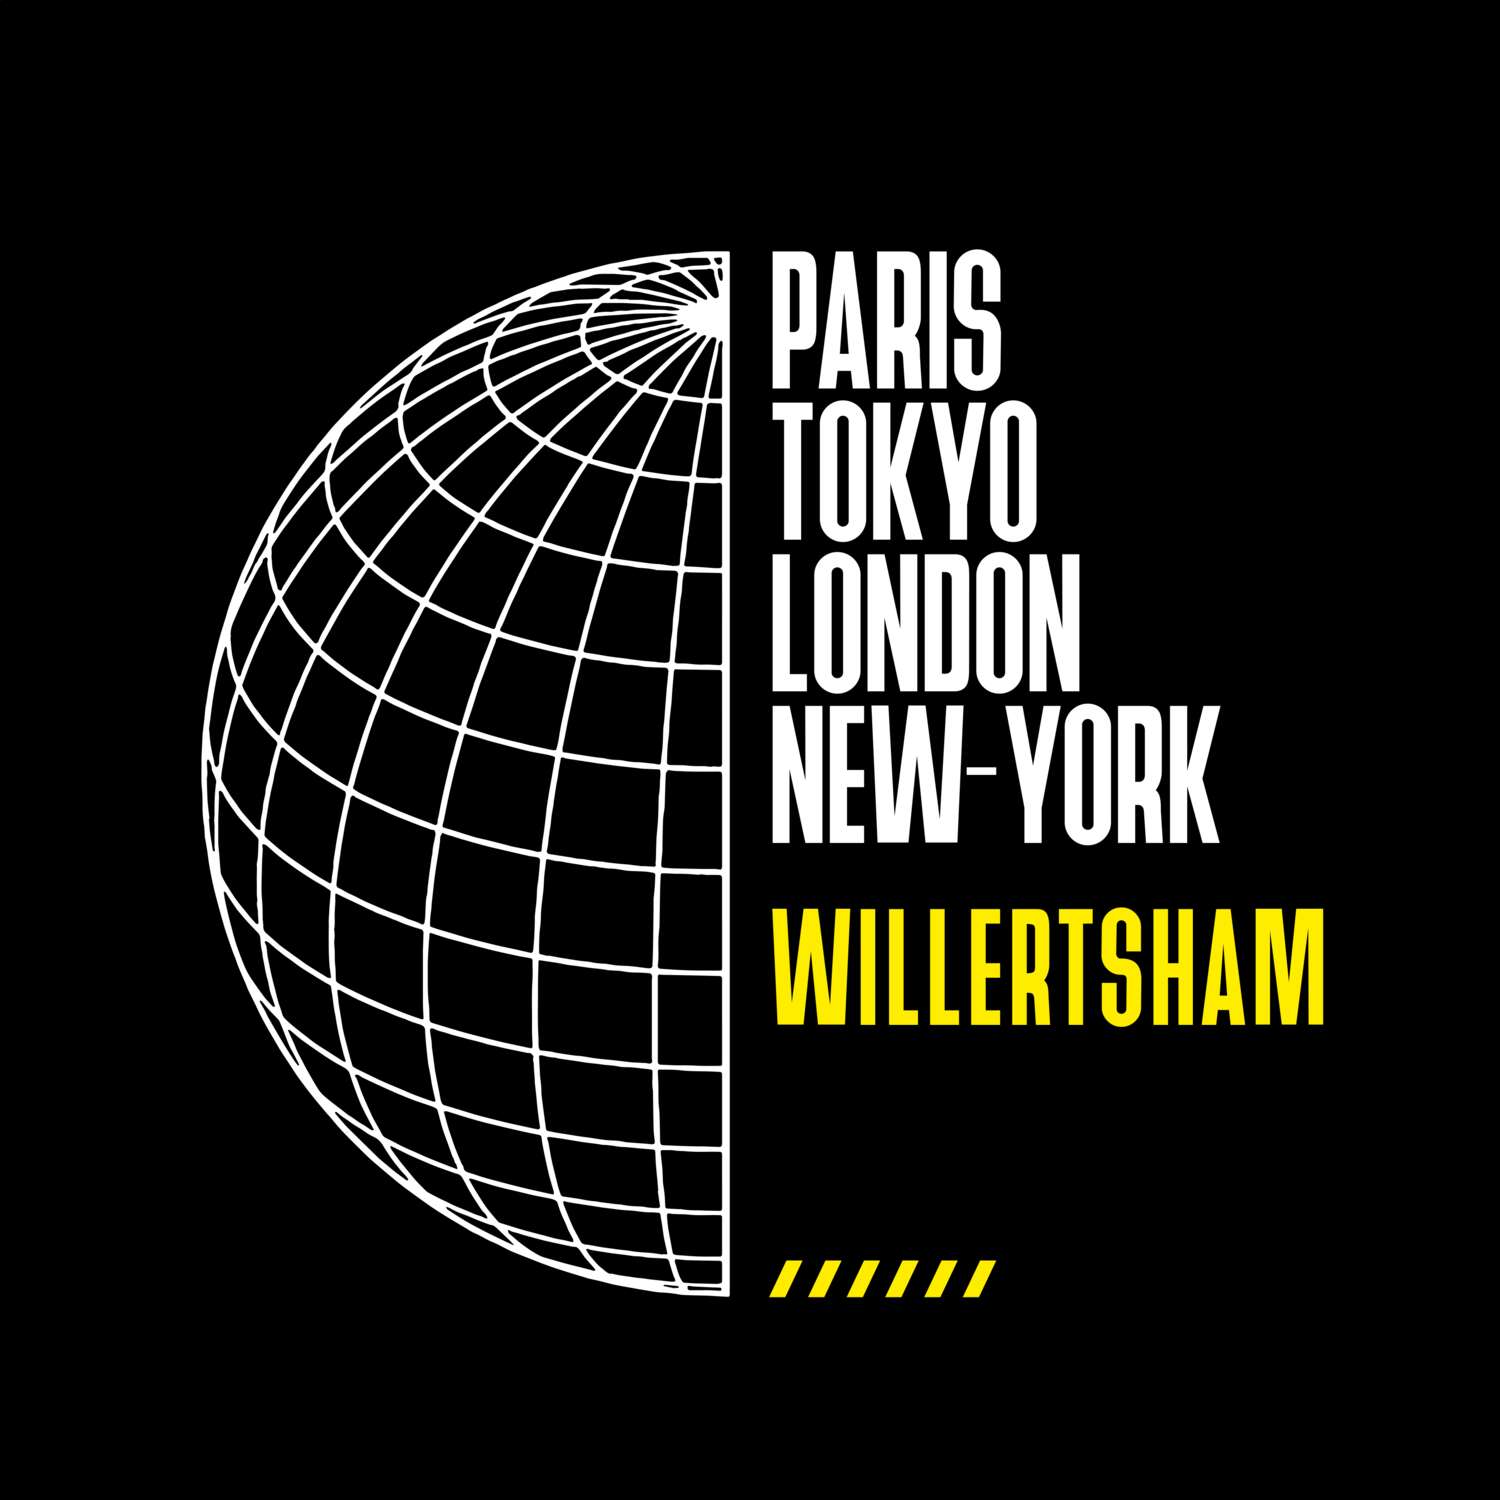 Willertsham T-Shirt »Paris Tokyo London«